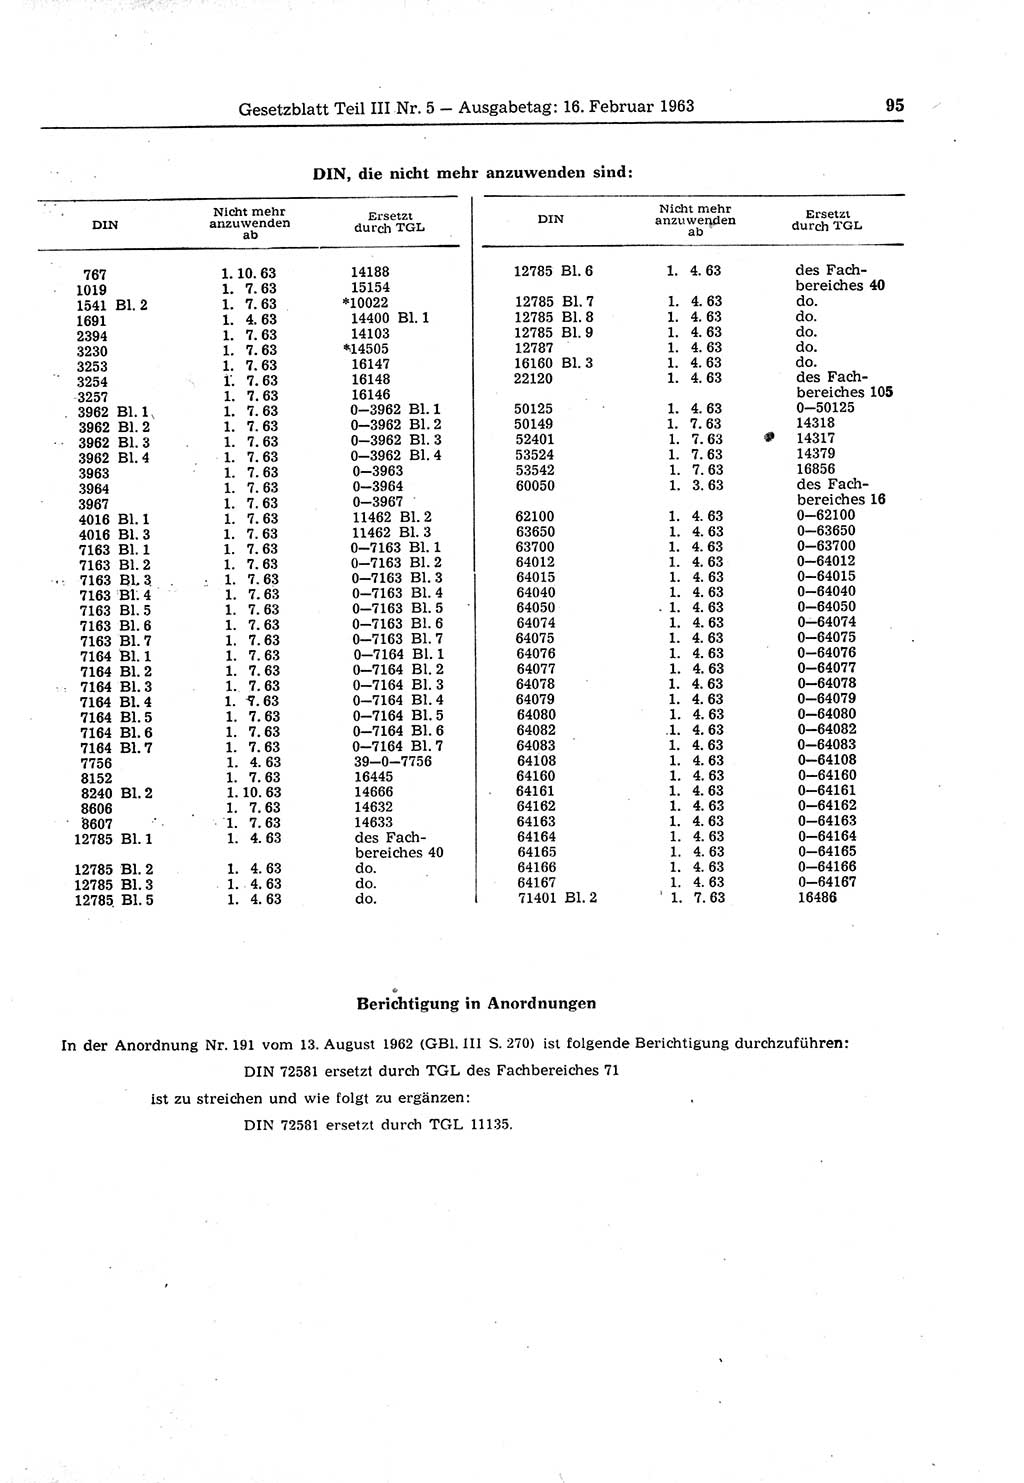 Gesetzblatt (GBl.) der Deutschen Demokratischen Republik (DDR) Teil ⅠⅠⅠ 1963, Seite 95 (GBl. DDR ⅠⅠⅠ 1963, S. 95)